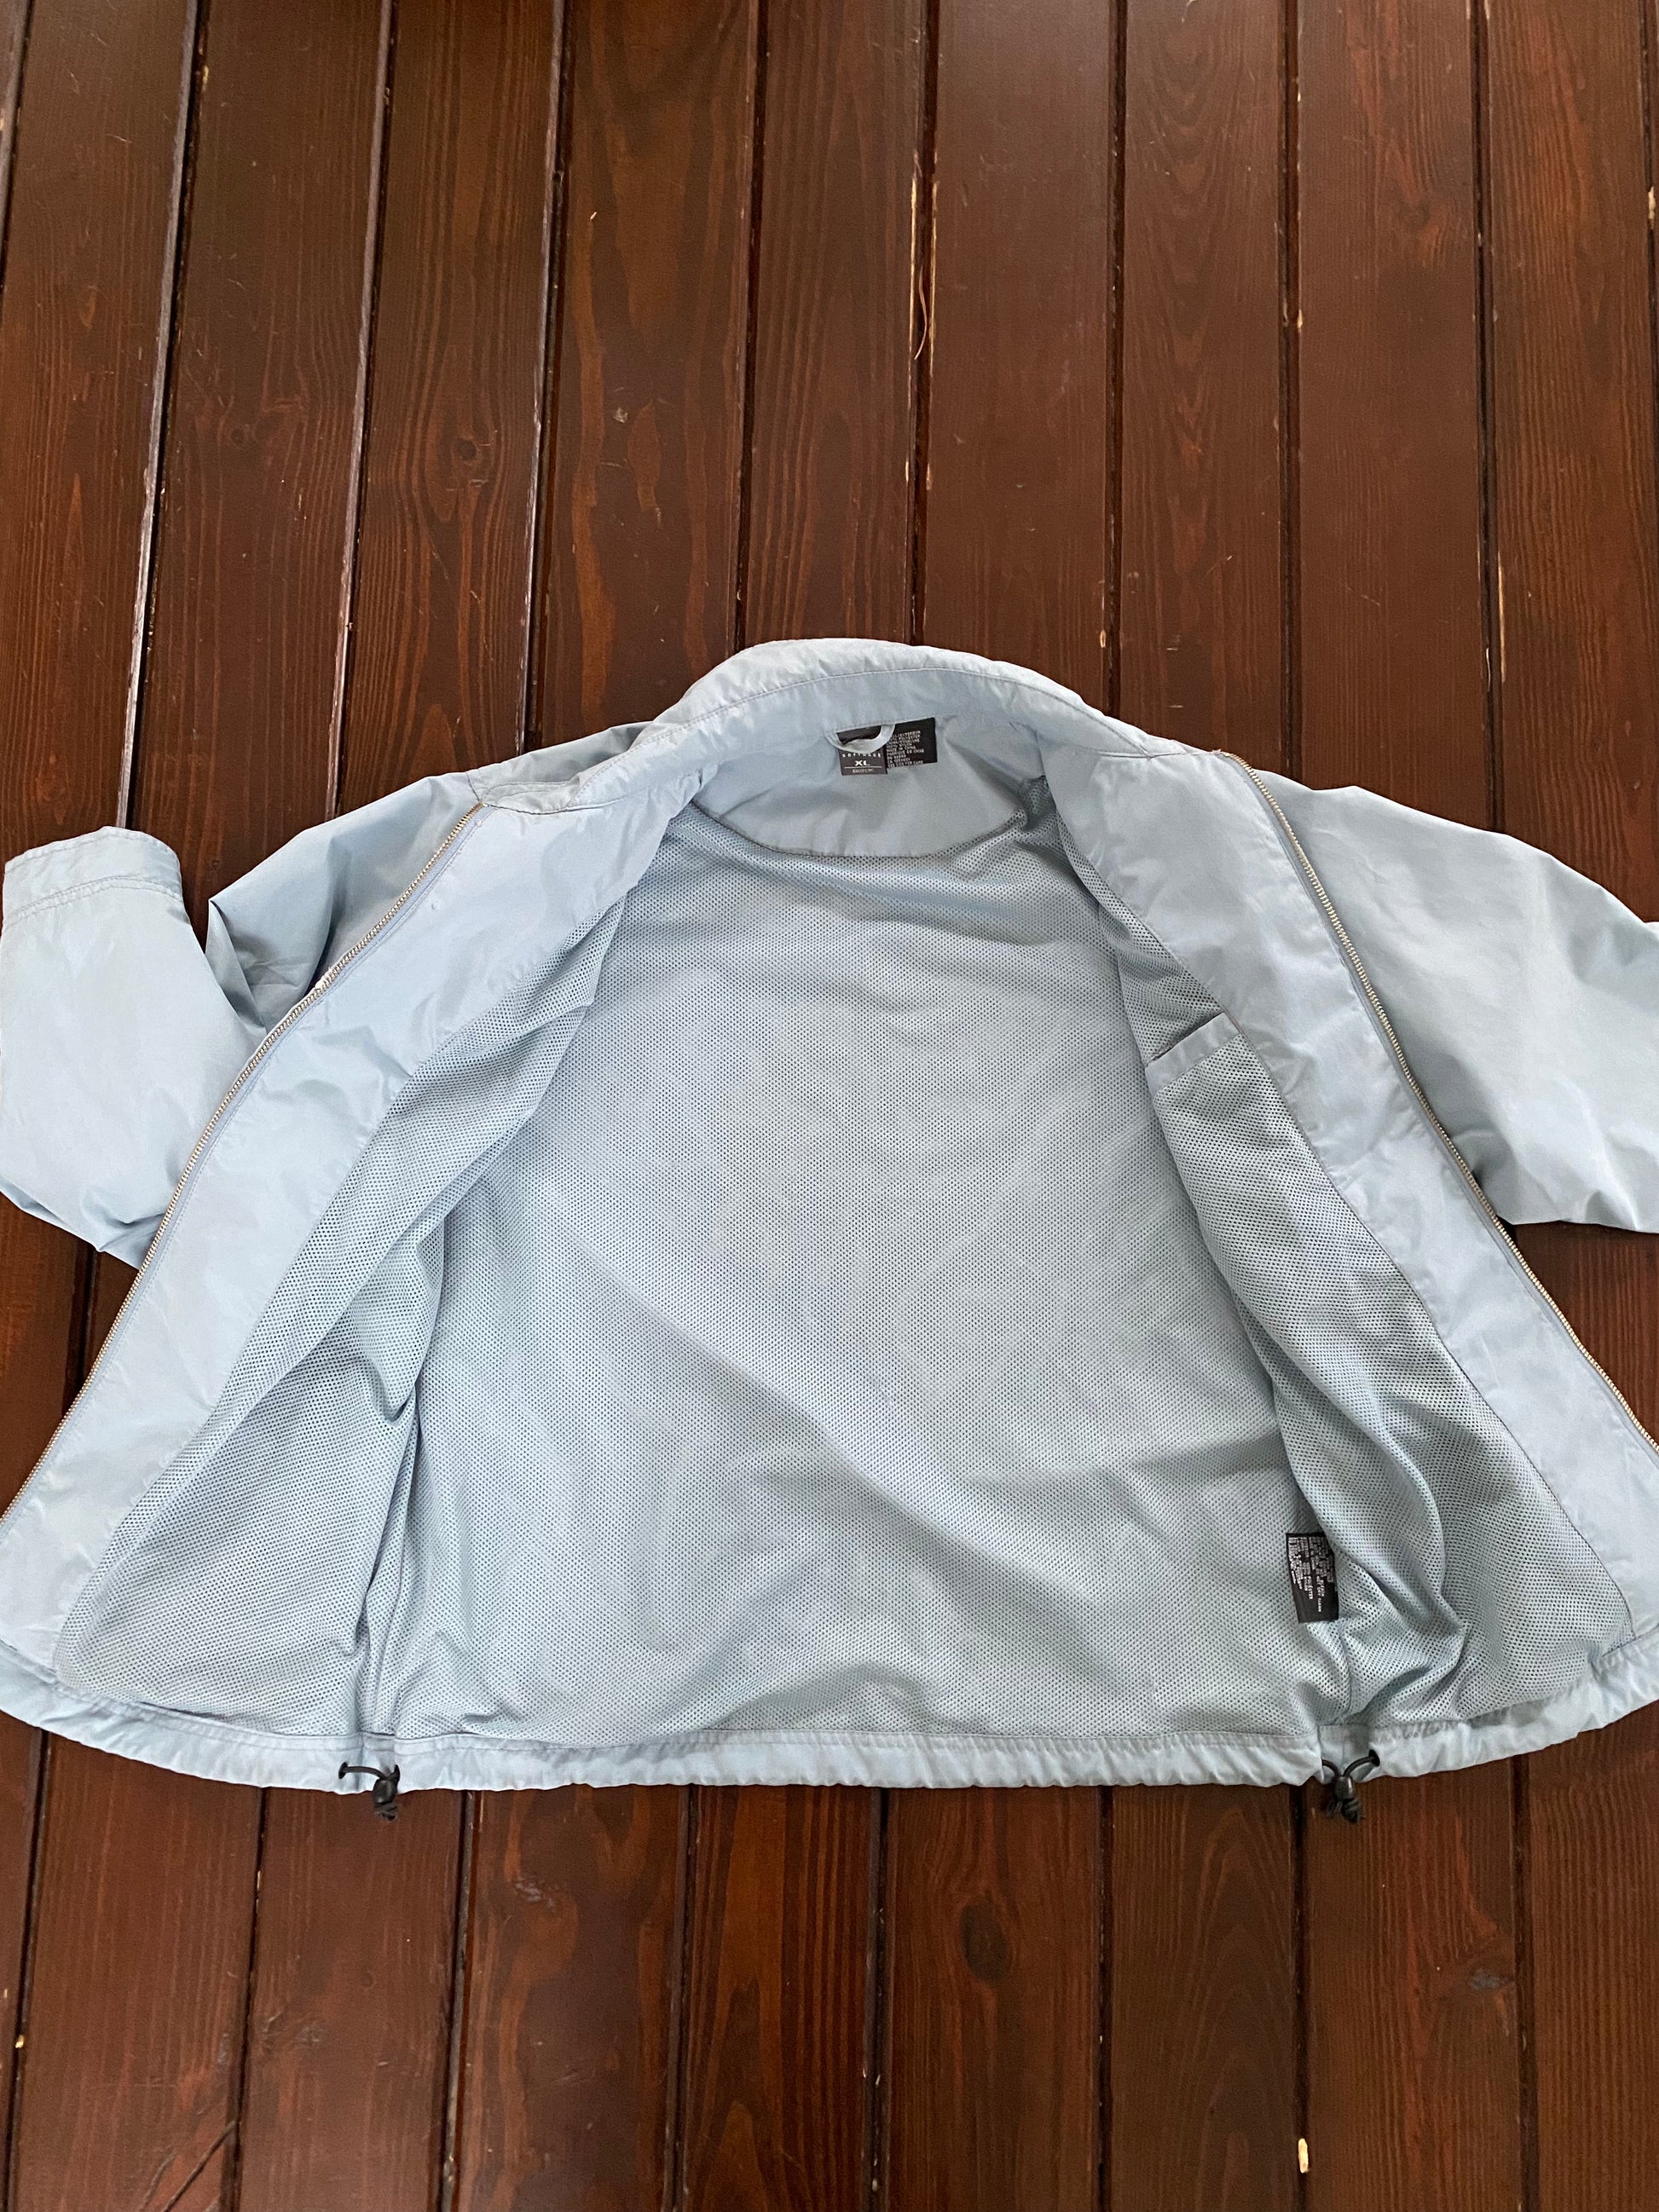 Oakley Software Light Blue Jacket - Brimm Archive Wardrobe Research